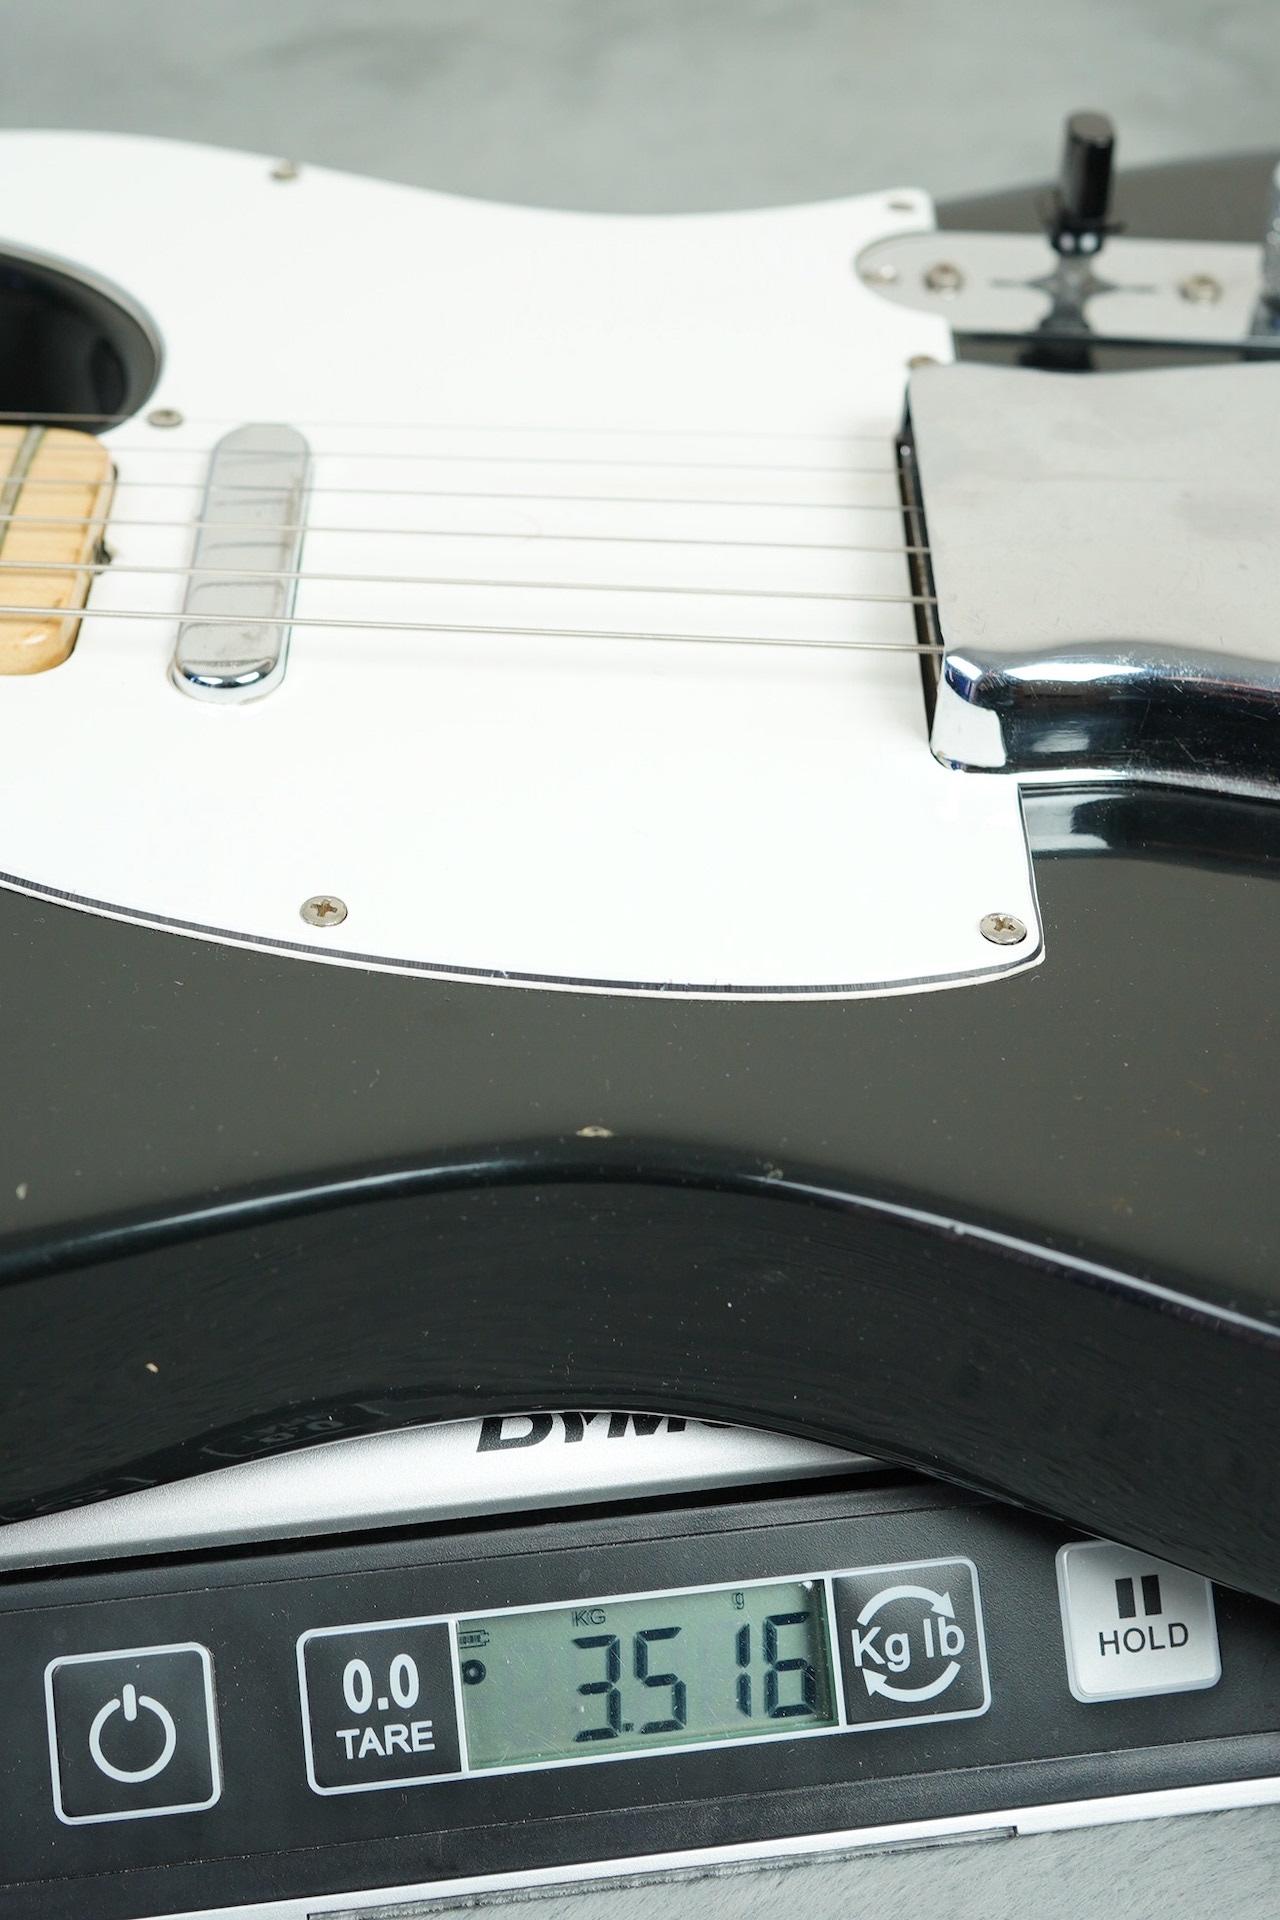 1971 Fender Telecaster Black